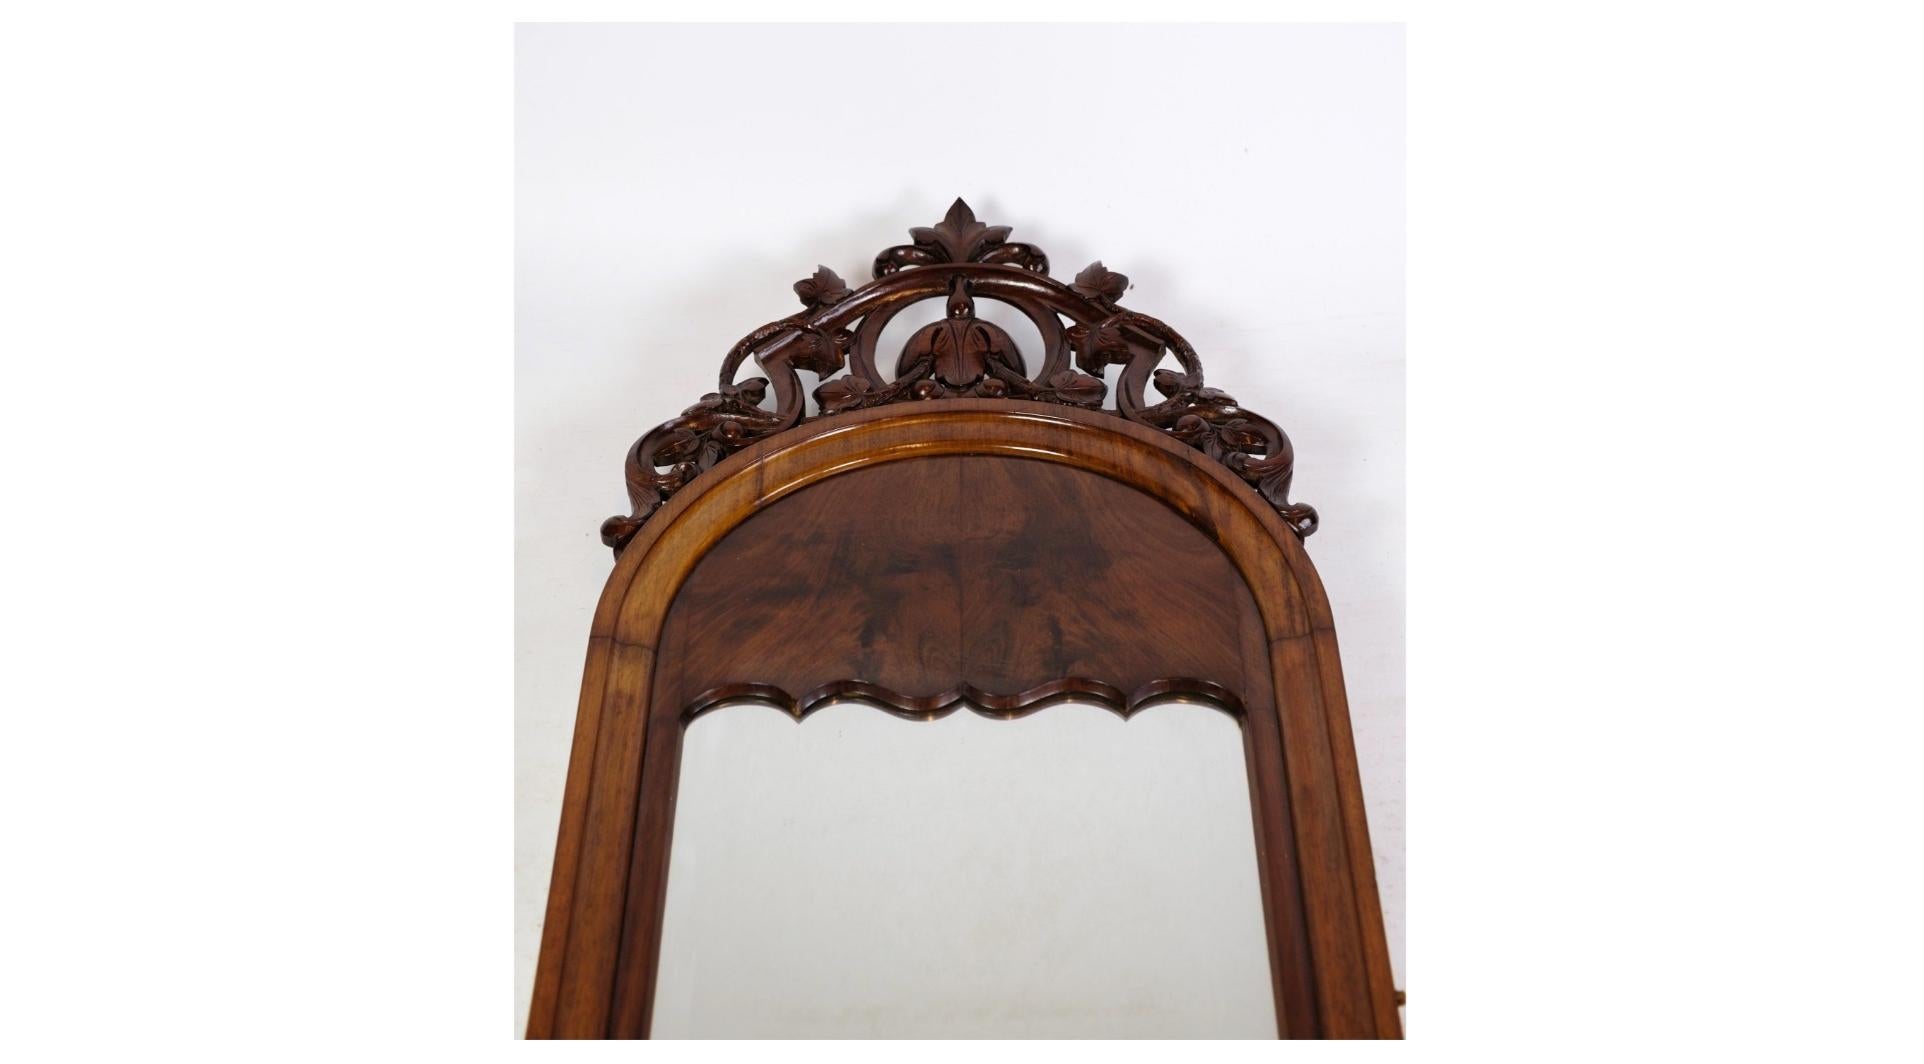 Der antike Spiegel Christian VIII. mit Mahagonidekor aus den 1860er Jahren ist ein prächtiges Stück Möbelgeschichte, das Eleganz und Finesse ausstrahlt. Dieser Spiegel zeugt von einer Ära der Raffinesse und der Handwerkskunst, die für die